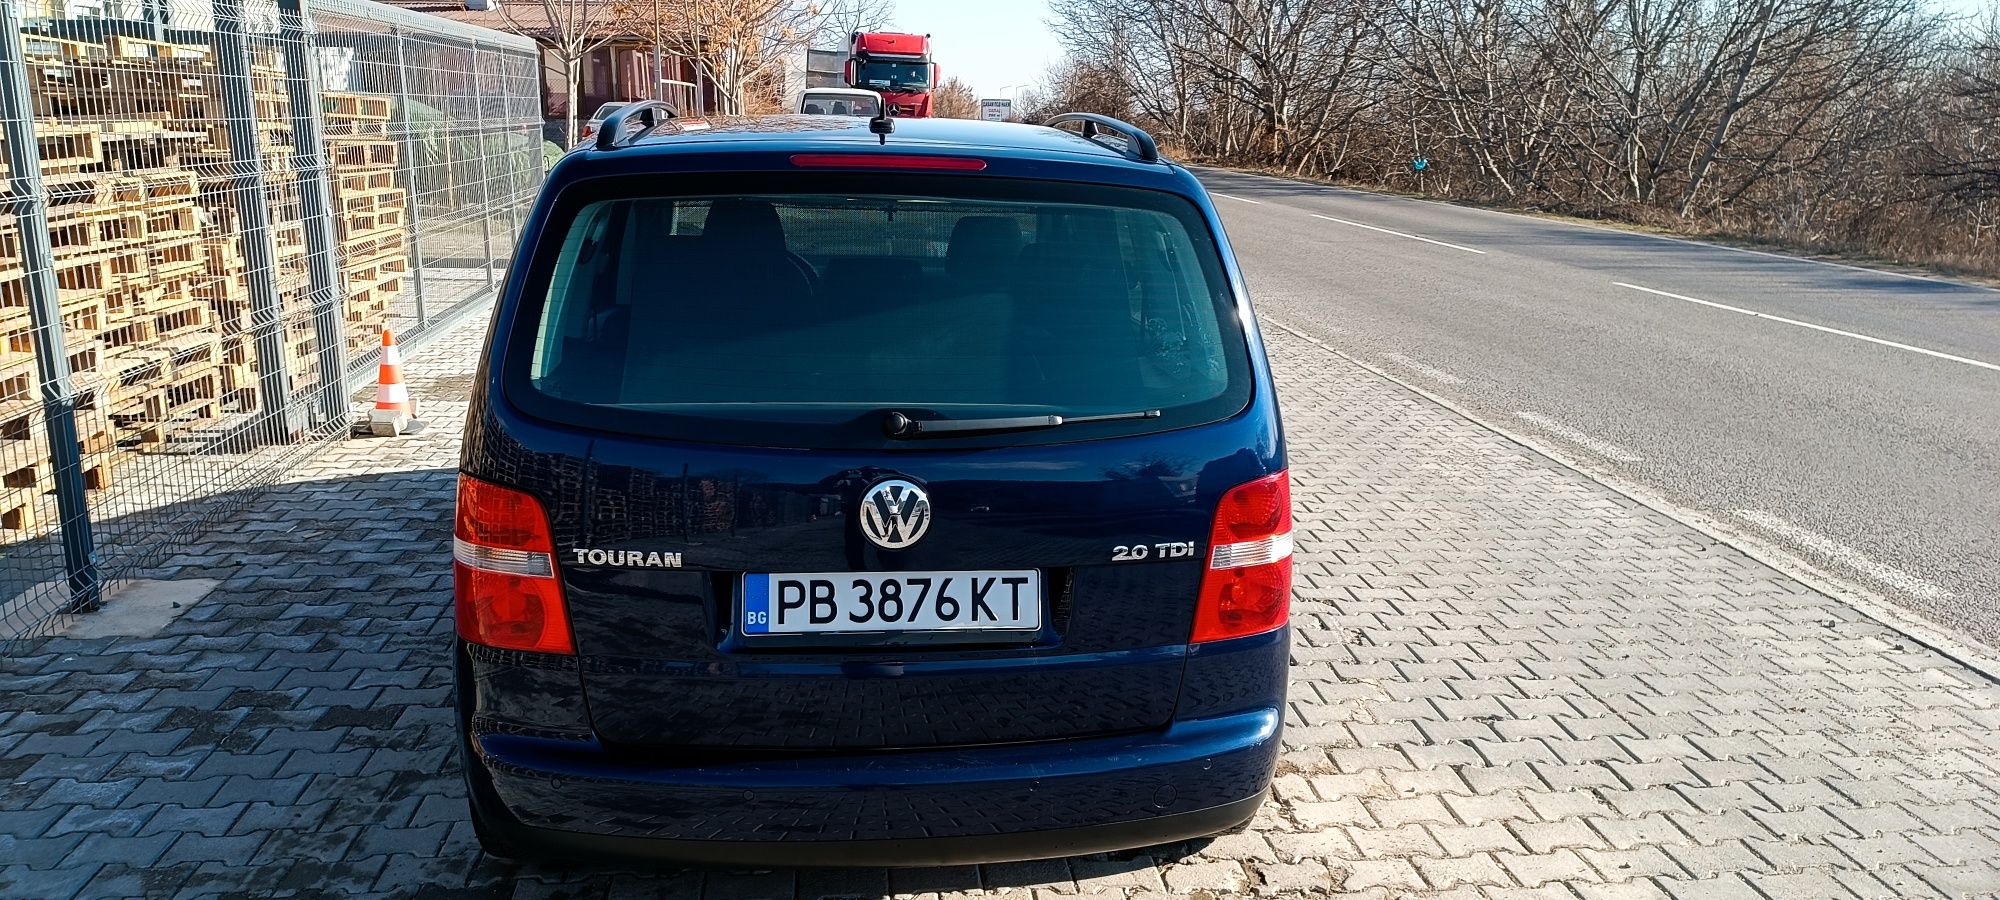 VW Touran 2.0TDI DSG Xenon 7+1